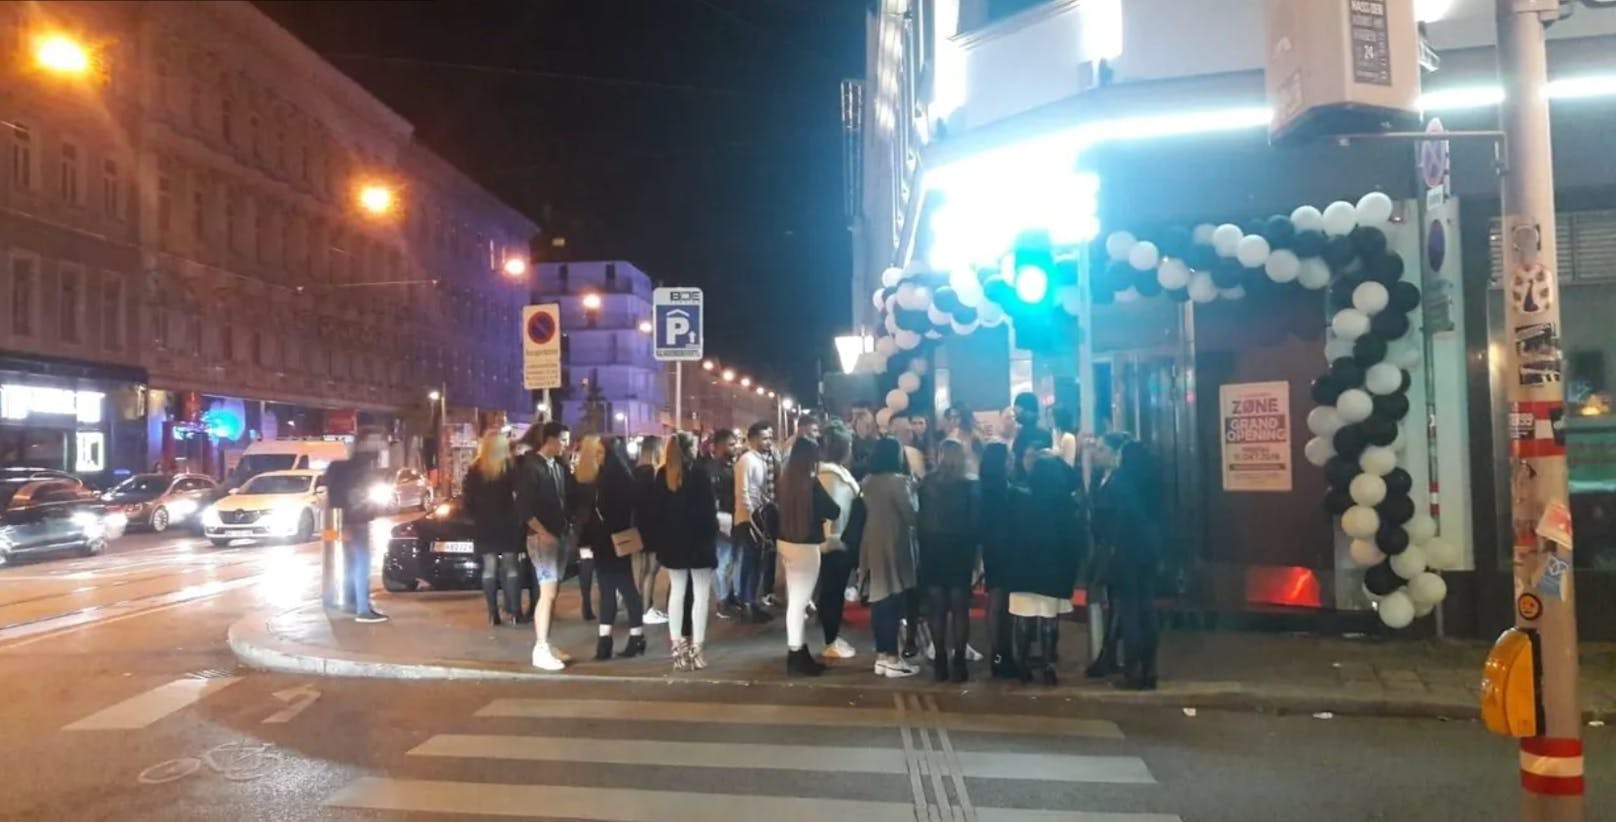 Der Club "Wien West Zone" öffnete am Freitag wieder seine Pforten. (Symbolfoto)